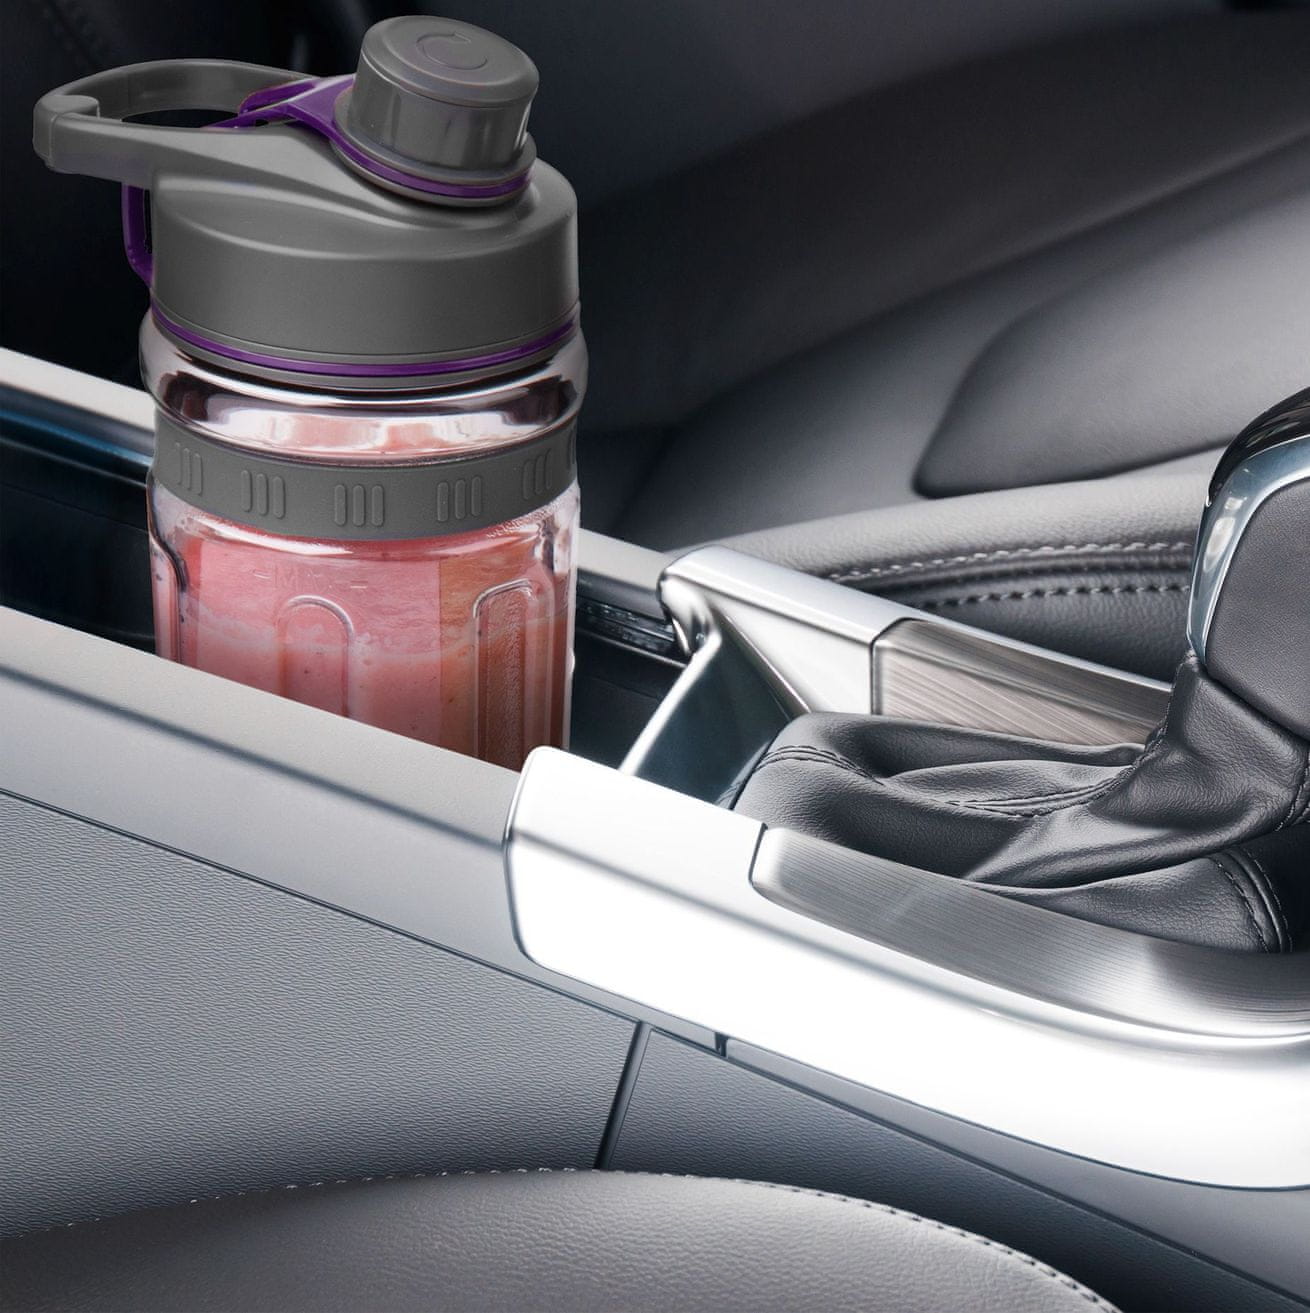  SENCOR SBL 7173VT Automatic Smoothie Blender Vitamin+ nosilec v avtomobilu  